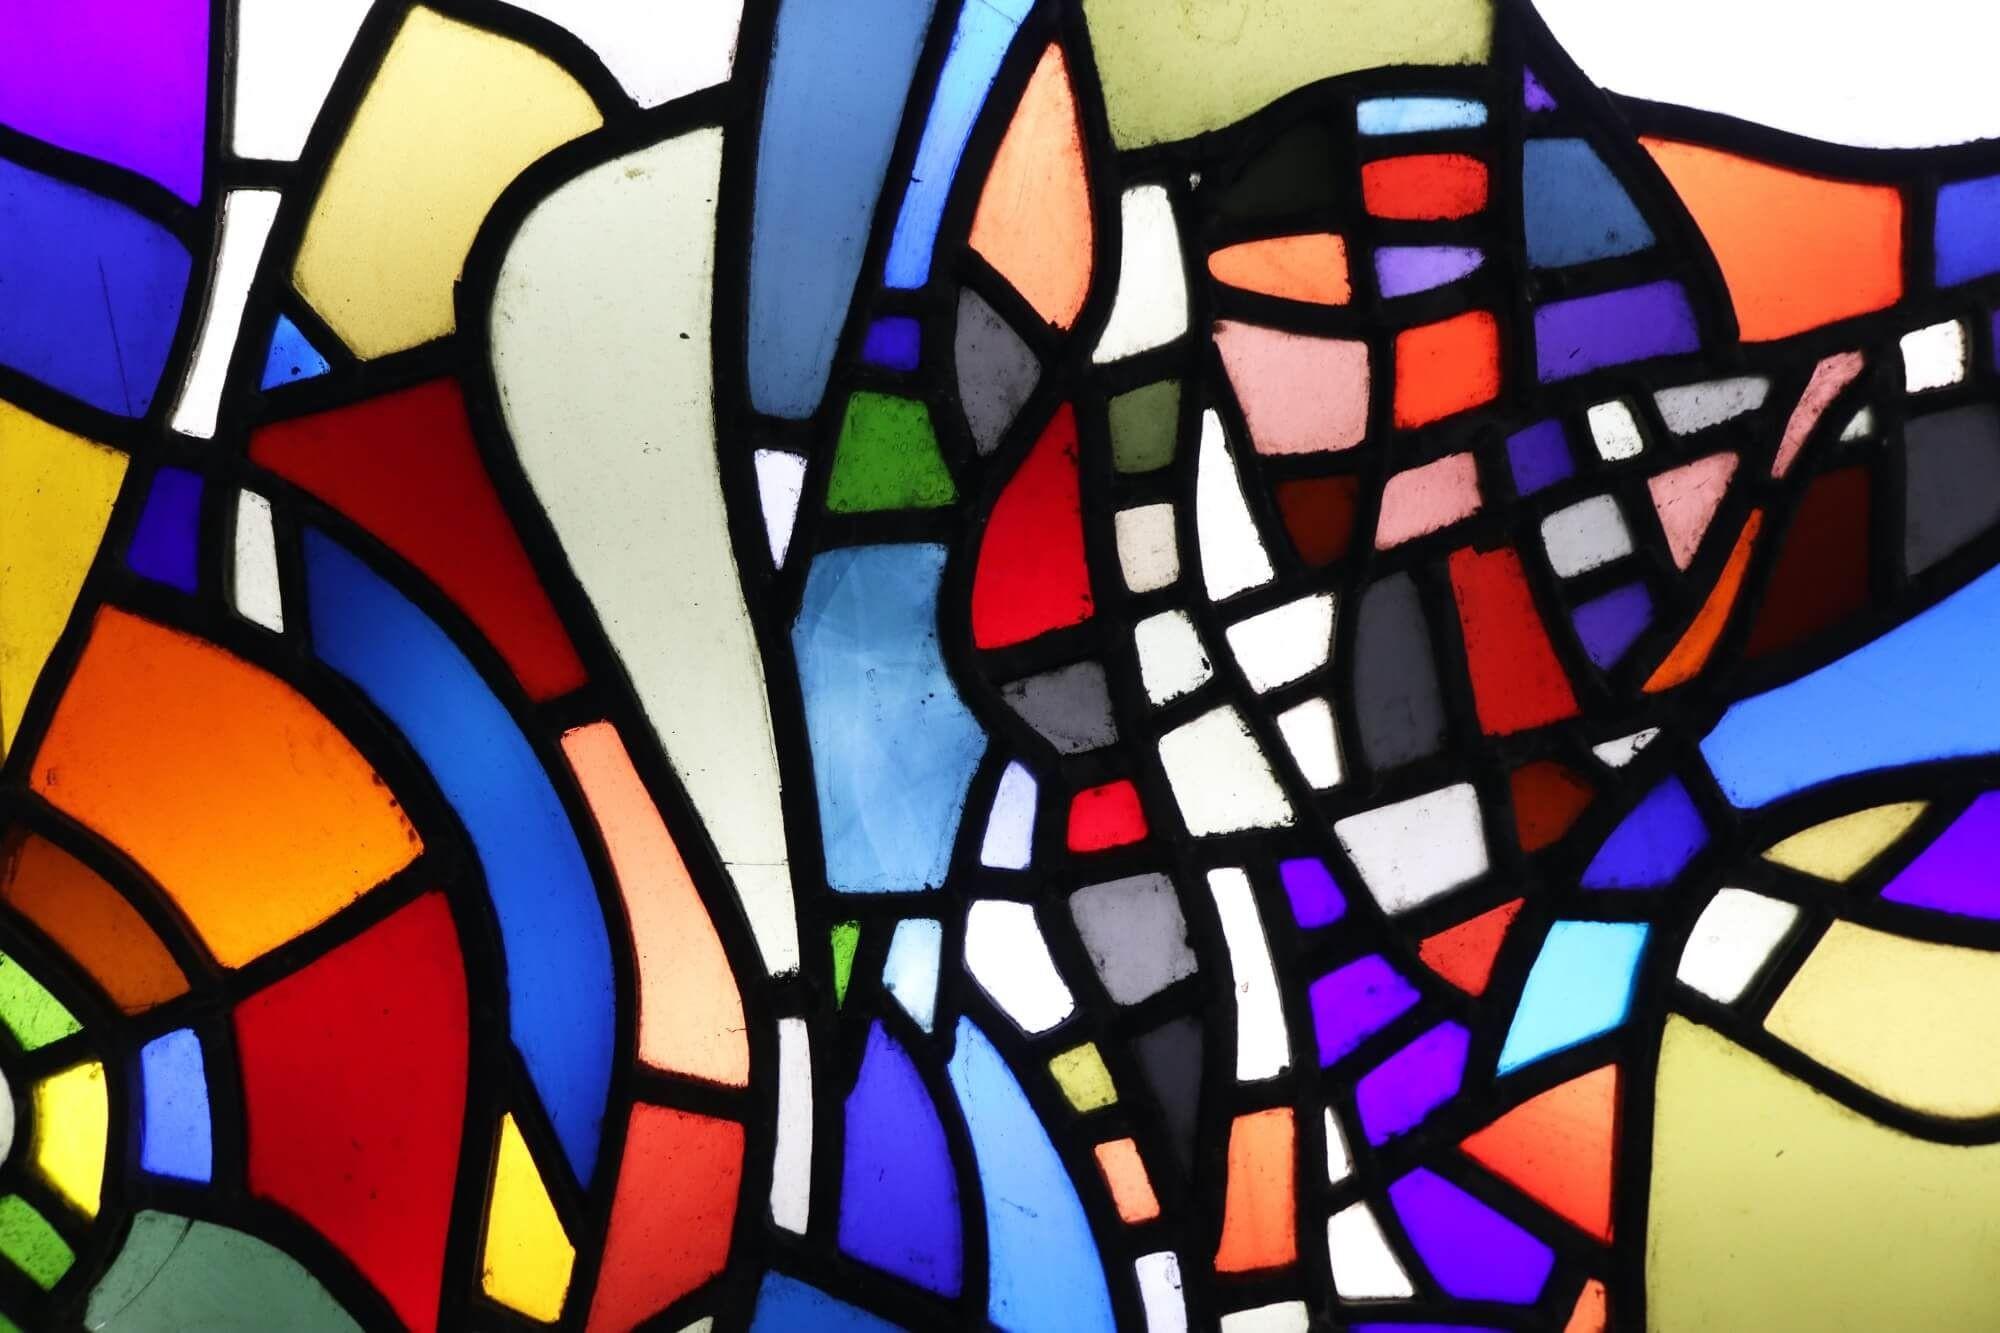 Ein mehrfarbiges Bleiglasfenster aus dem Studio des britischen Künstlers Patrick Reyntiens (1925-2021). Diese große Glasmalerei, die dem Künstler zugeschrieben wird, zeigt ein lebhaftes, abstraktes Design. Es handelt sich um eine von mehreren